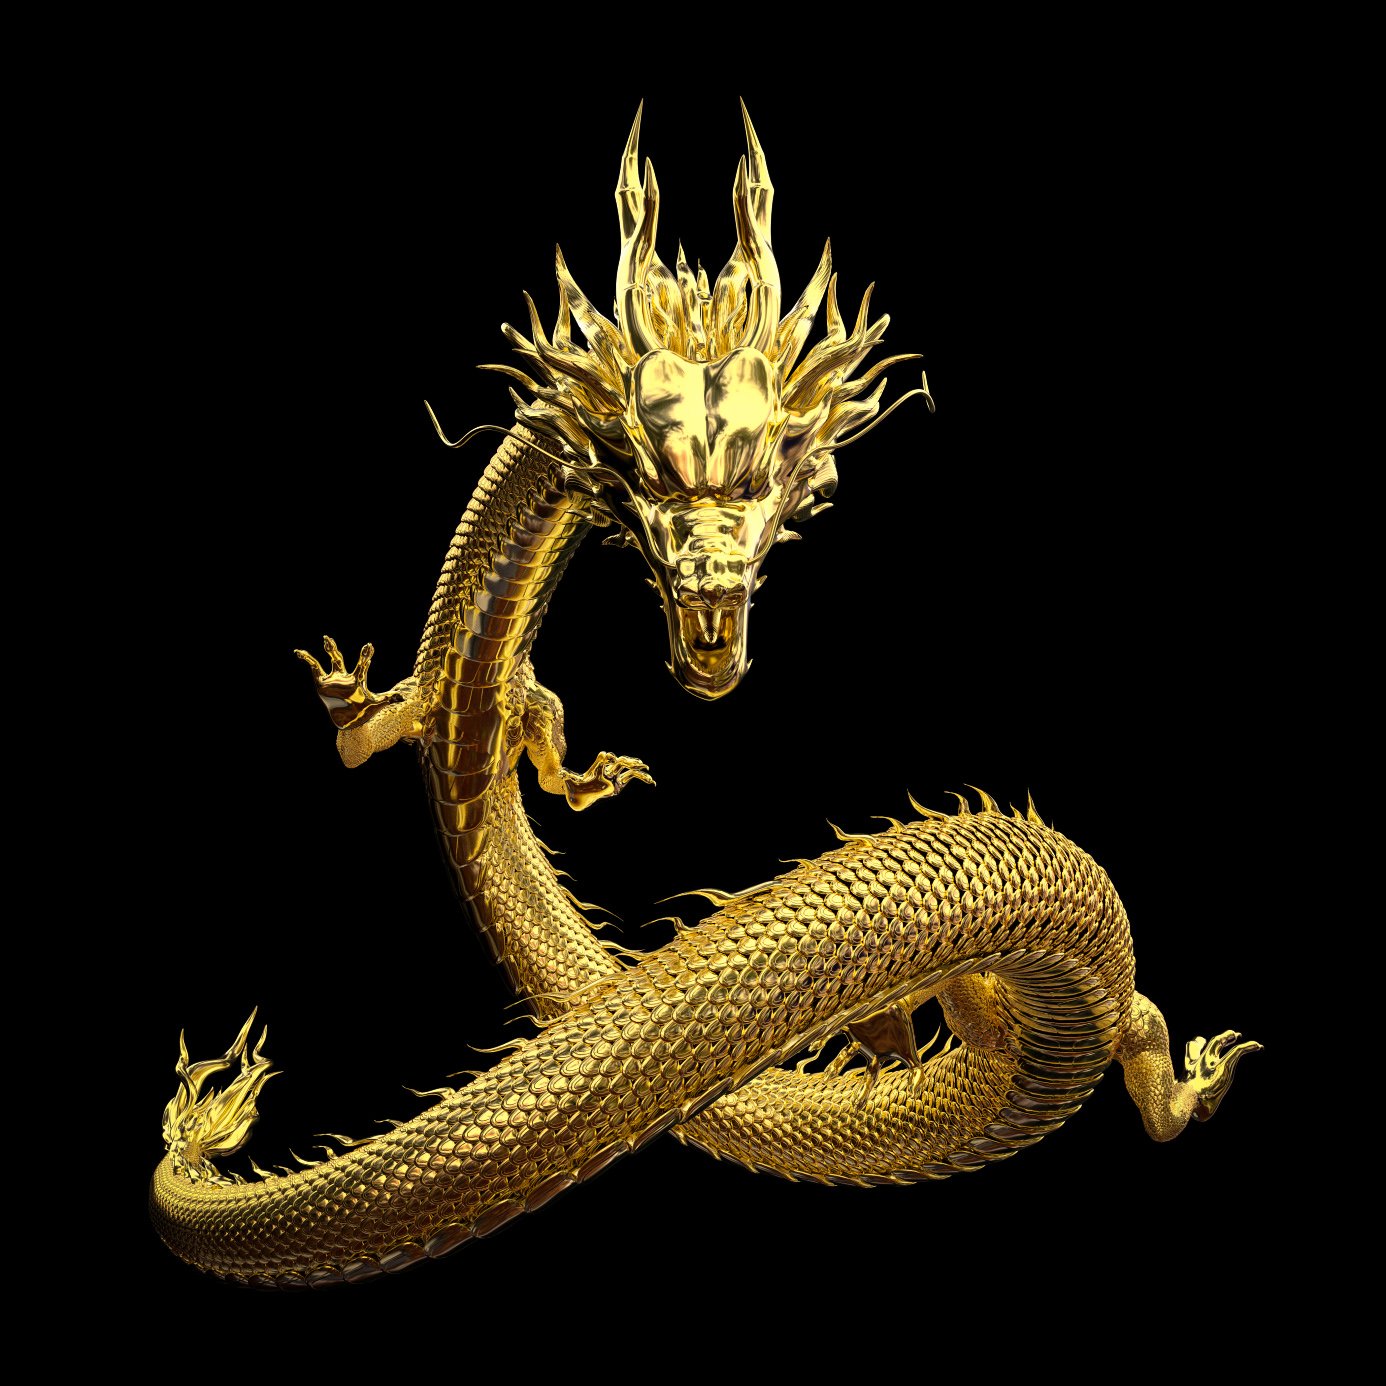 Akciğer olarak da bilinen Çin ejderhası, Çin mitolojisinde efsanevi bir yaratıktır.